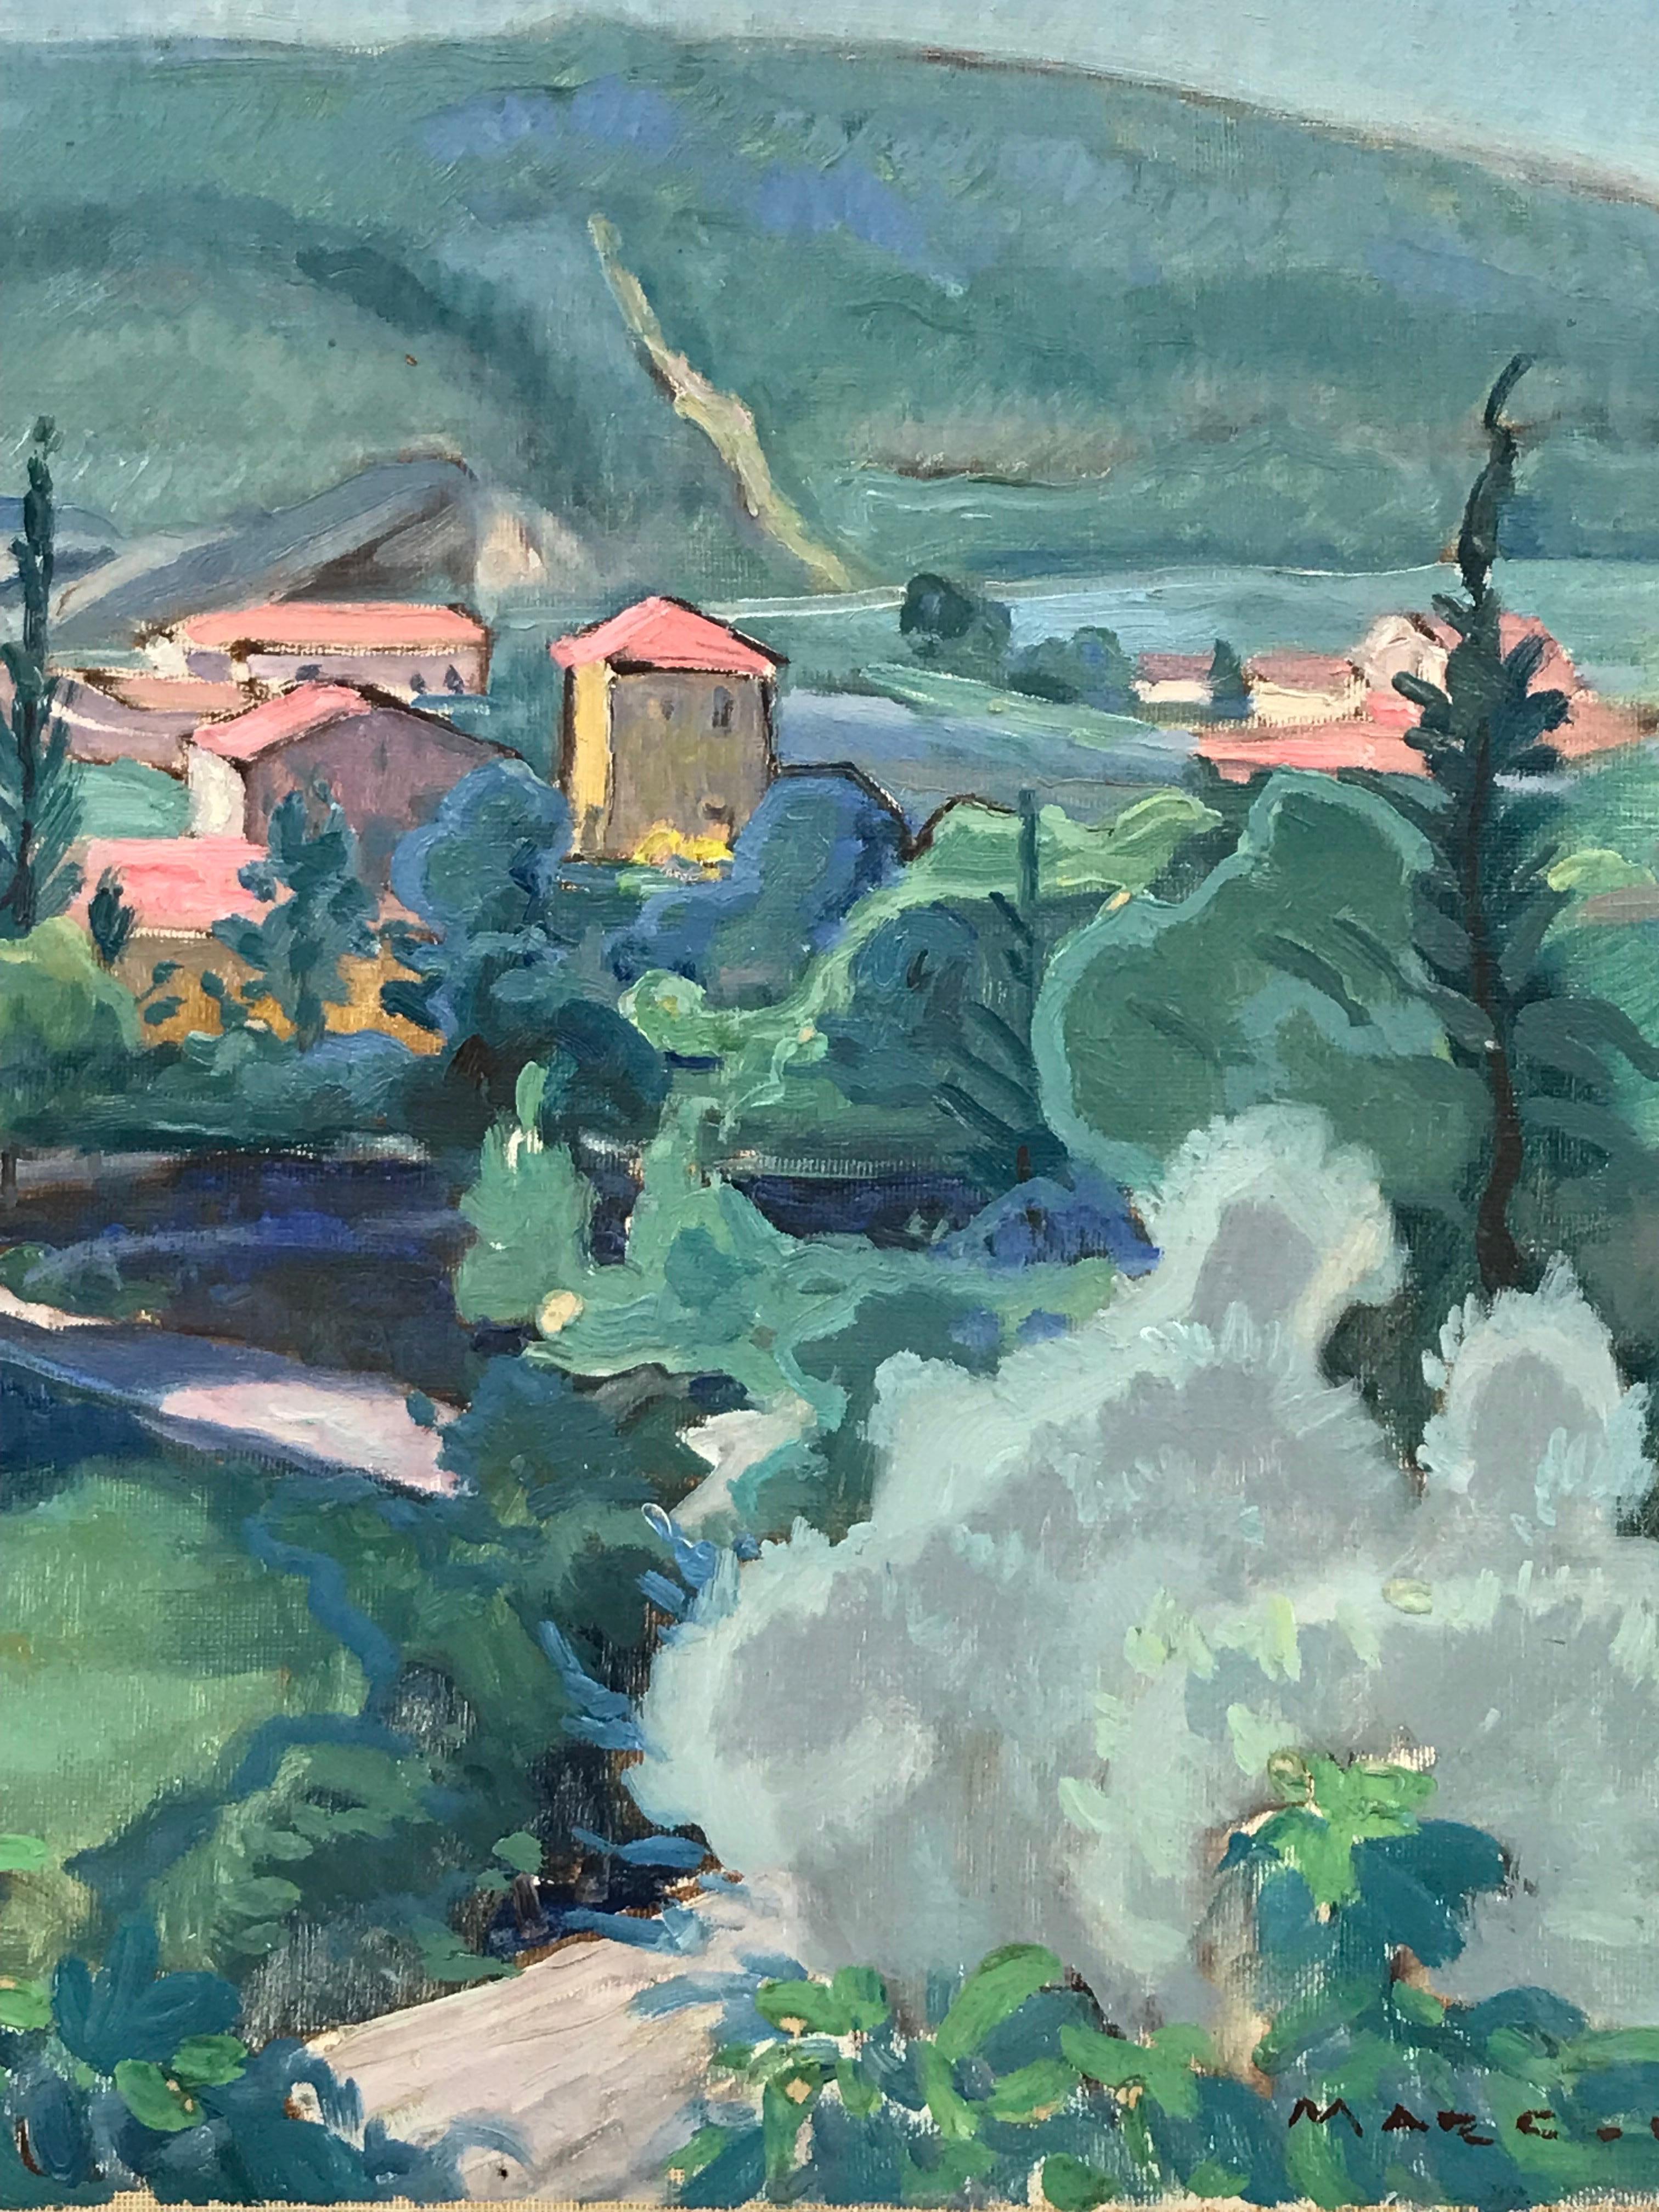 Französisches Fauvistisches Ölgemälde aus den 1930er Jahren, 1930er Jahre, weit entfernte provenzalische Landschaften, rosa Häuser (Fauvismus), Painting, von French School